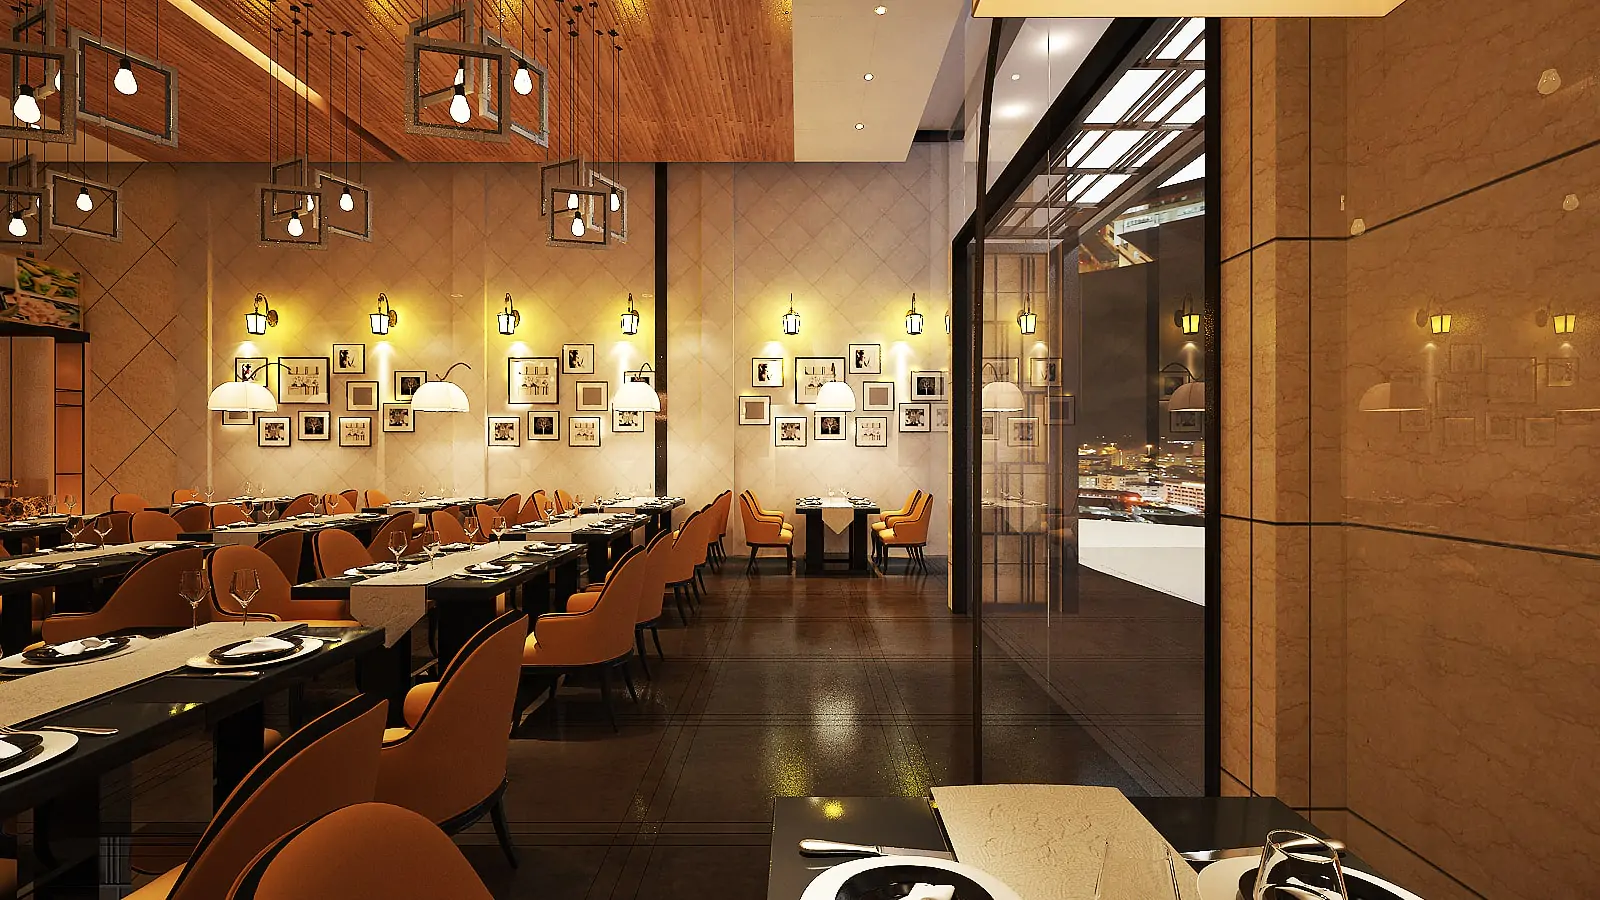 Tangail Restaurant CBFCC 3D Design (11)